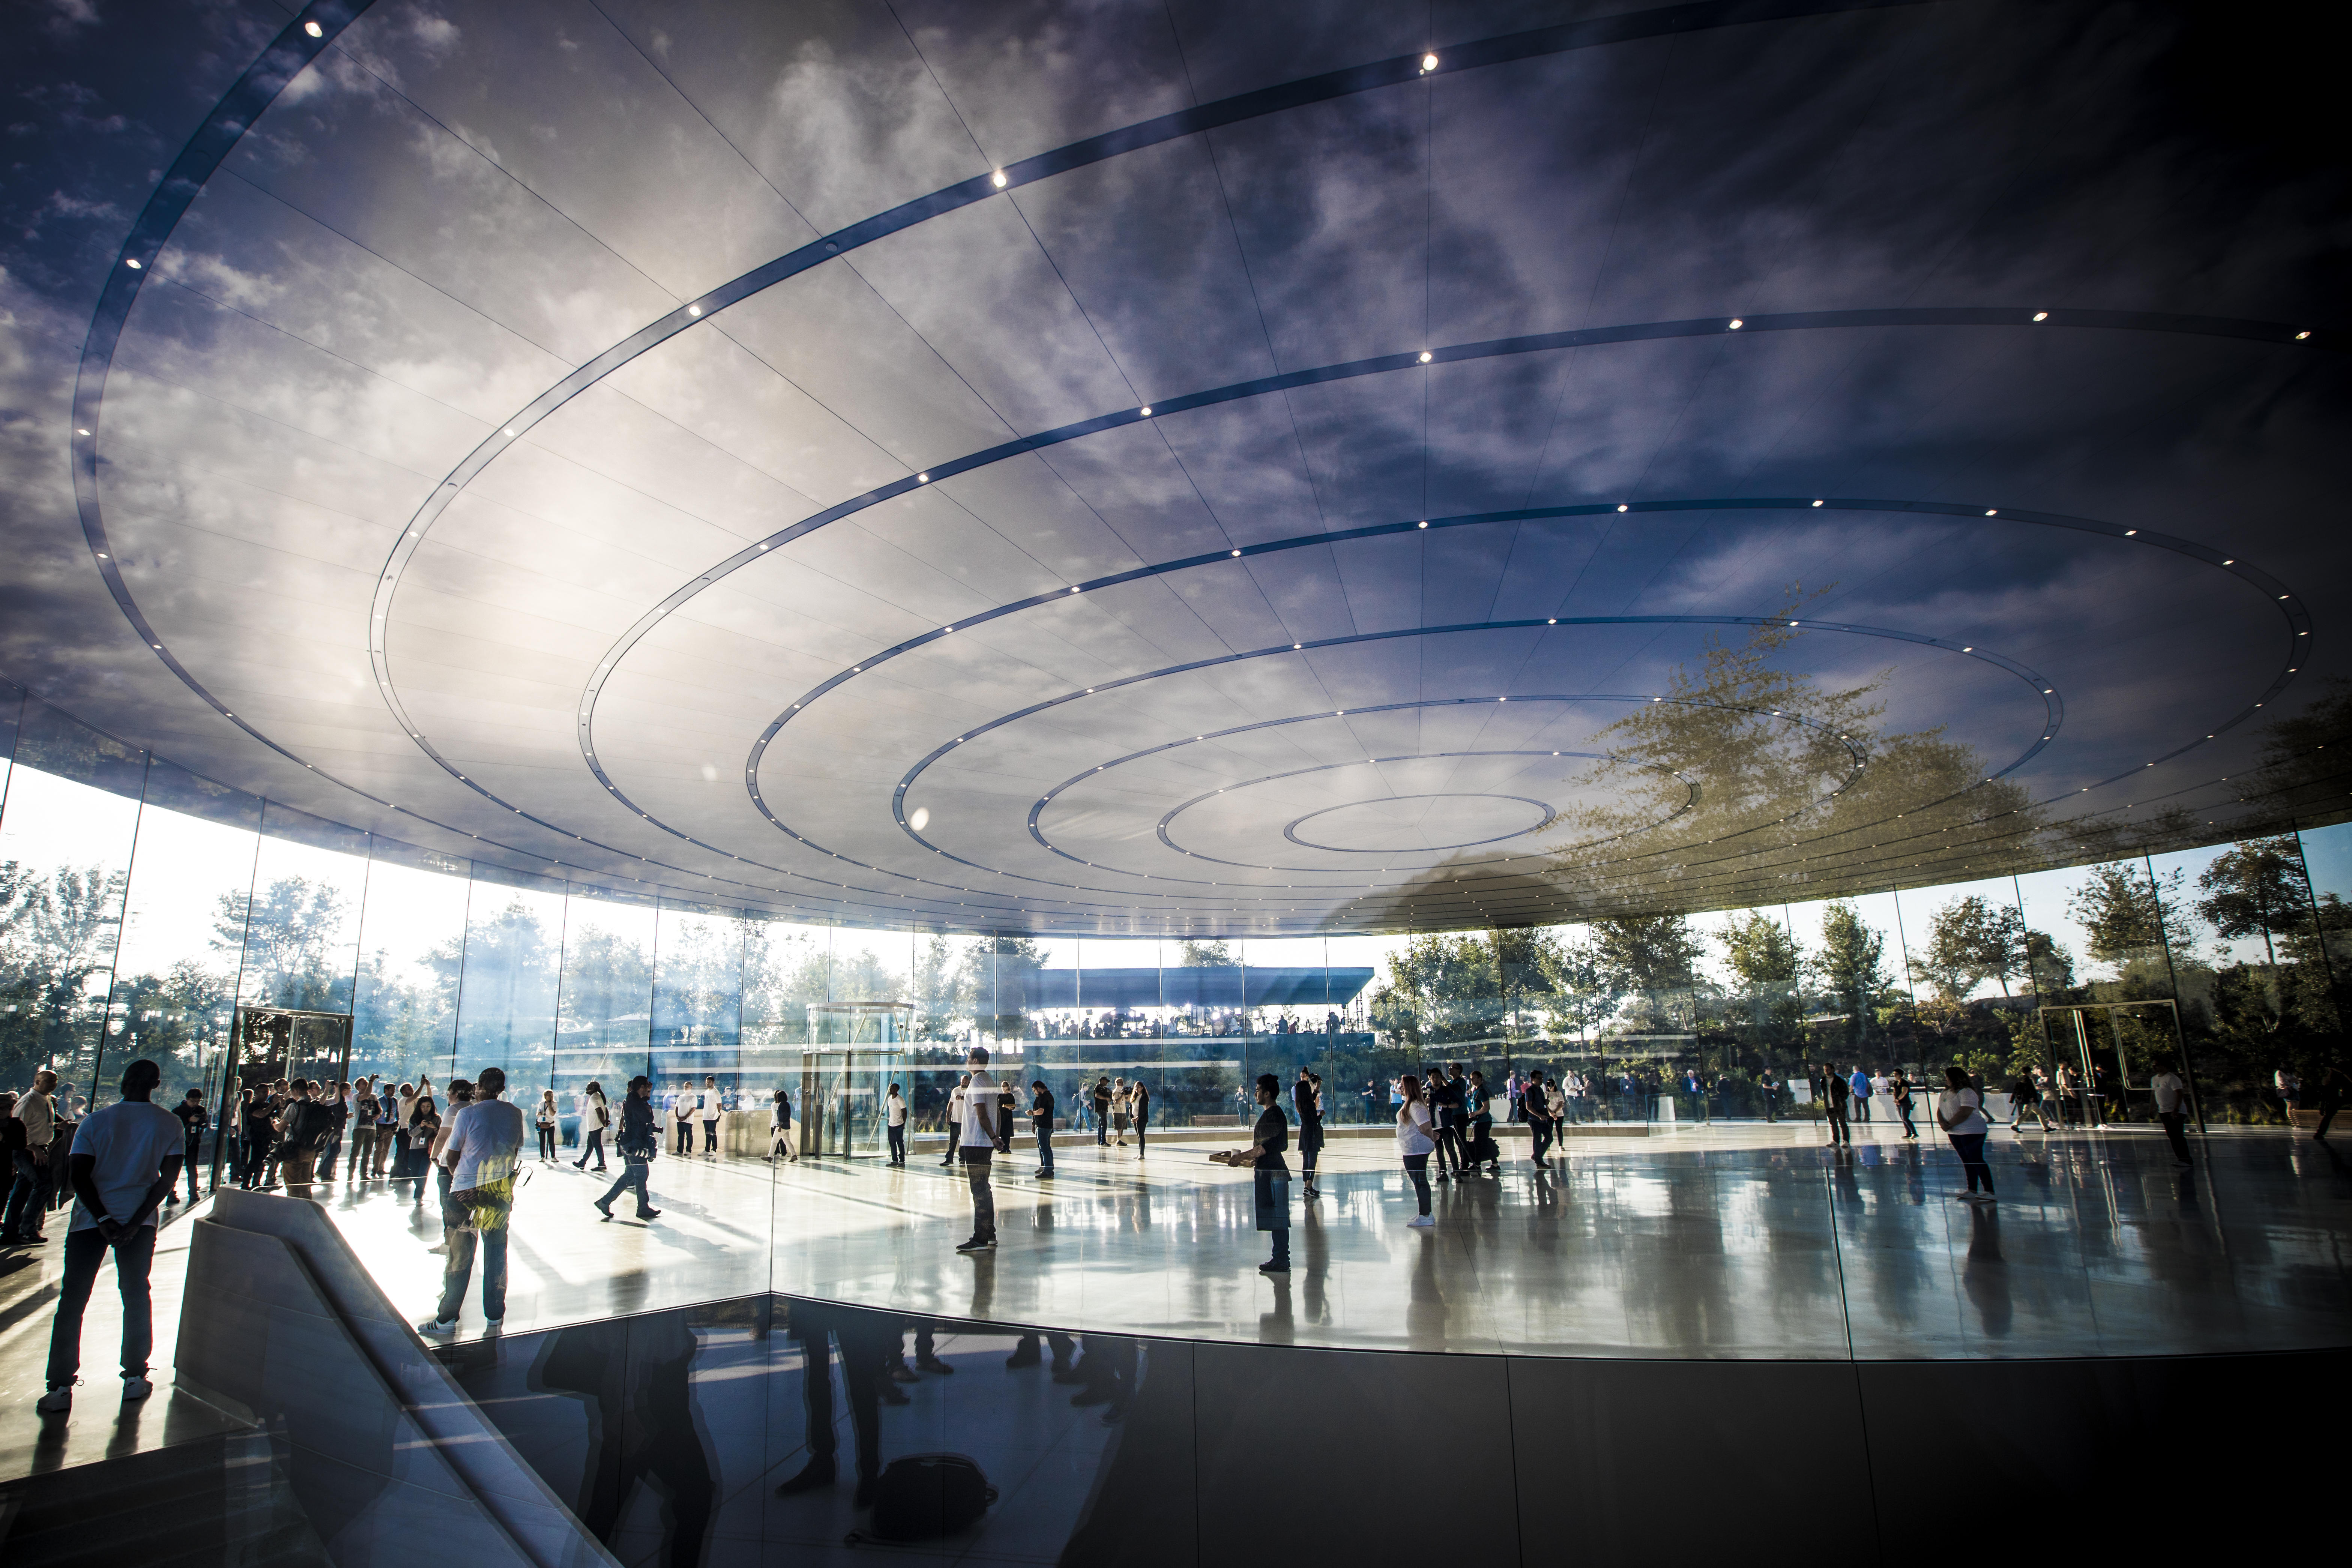 アップルの巨大な 宇宙船 キャンパス Apple Park を初訪問 Cnet Japan